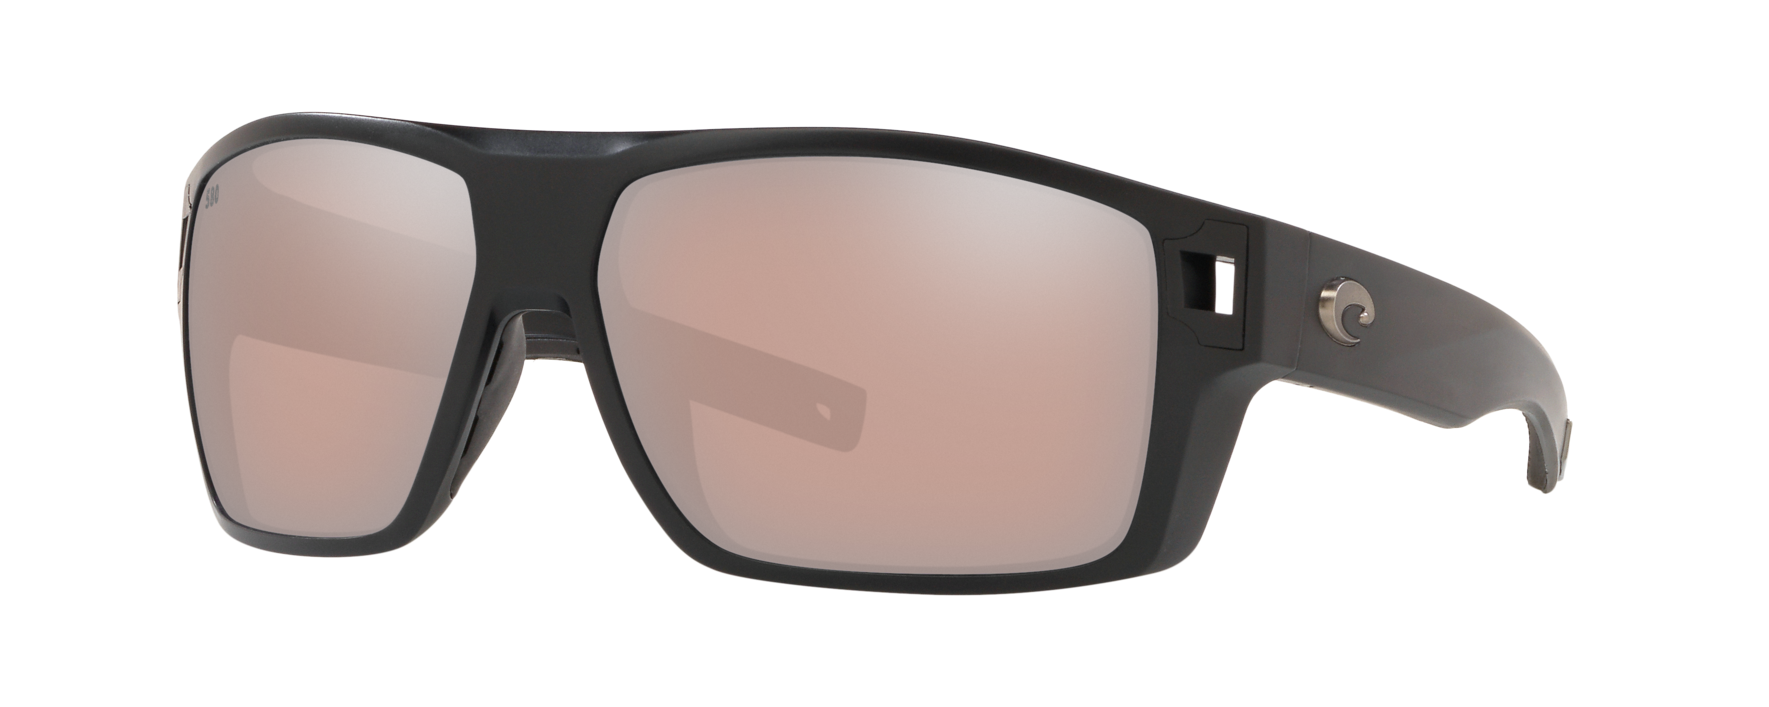 costa diego sunglasses in black with copper silver mirror lenses